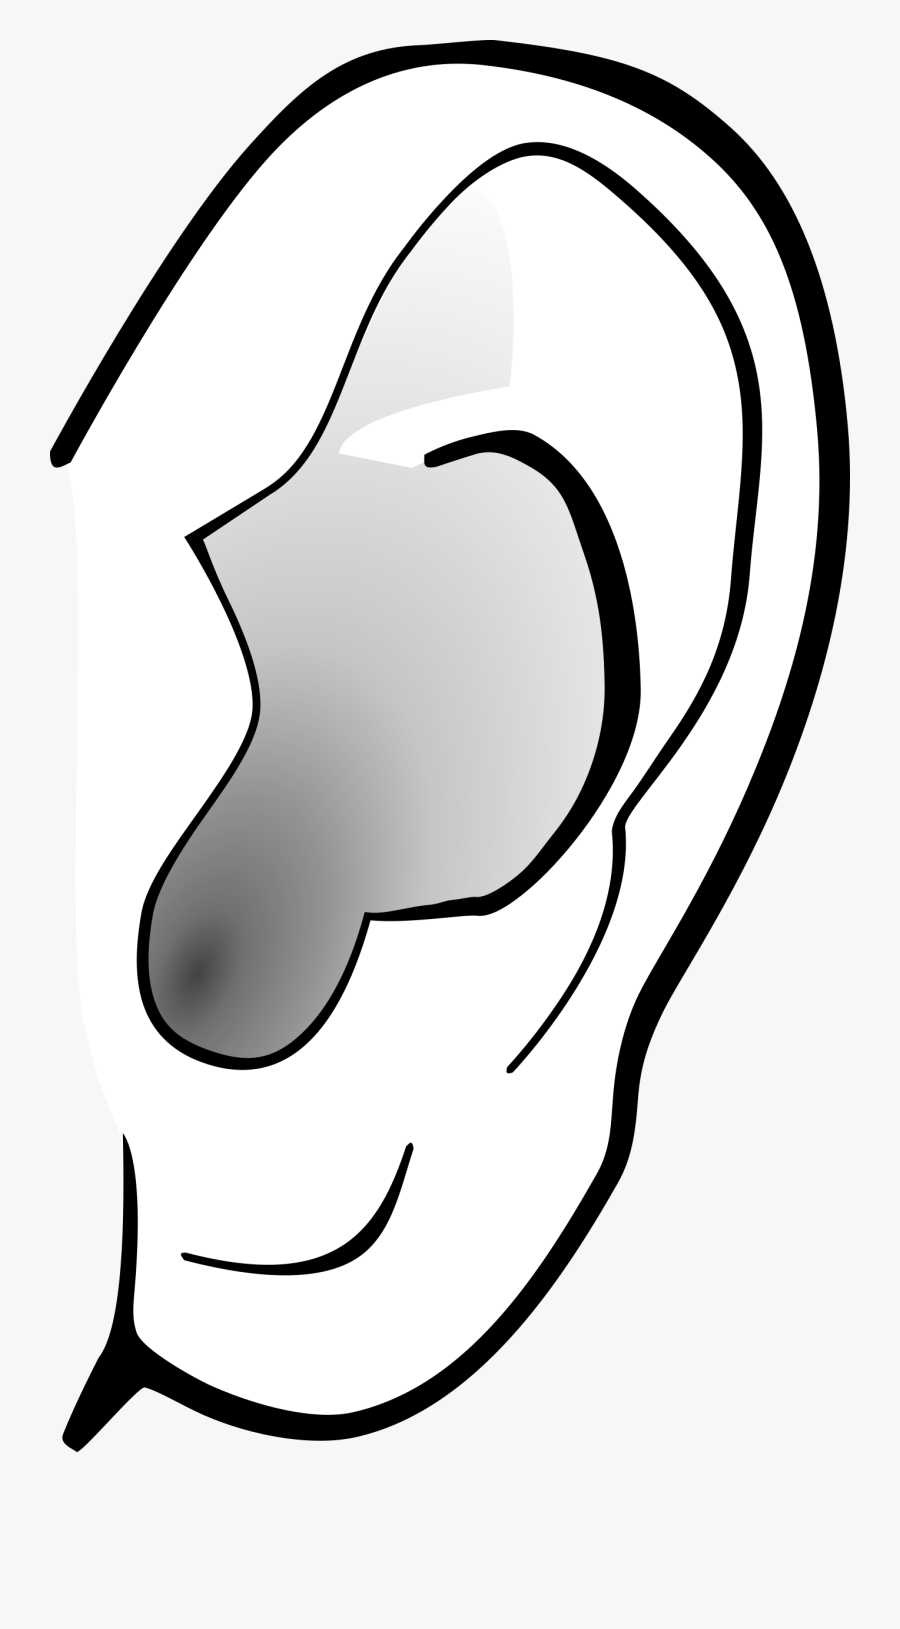 Clipart - Ear Clipart Transparent Background, Transparent Clipart